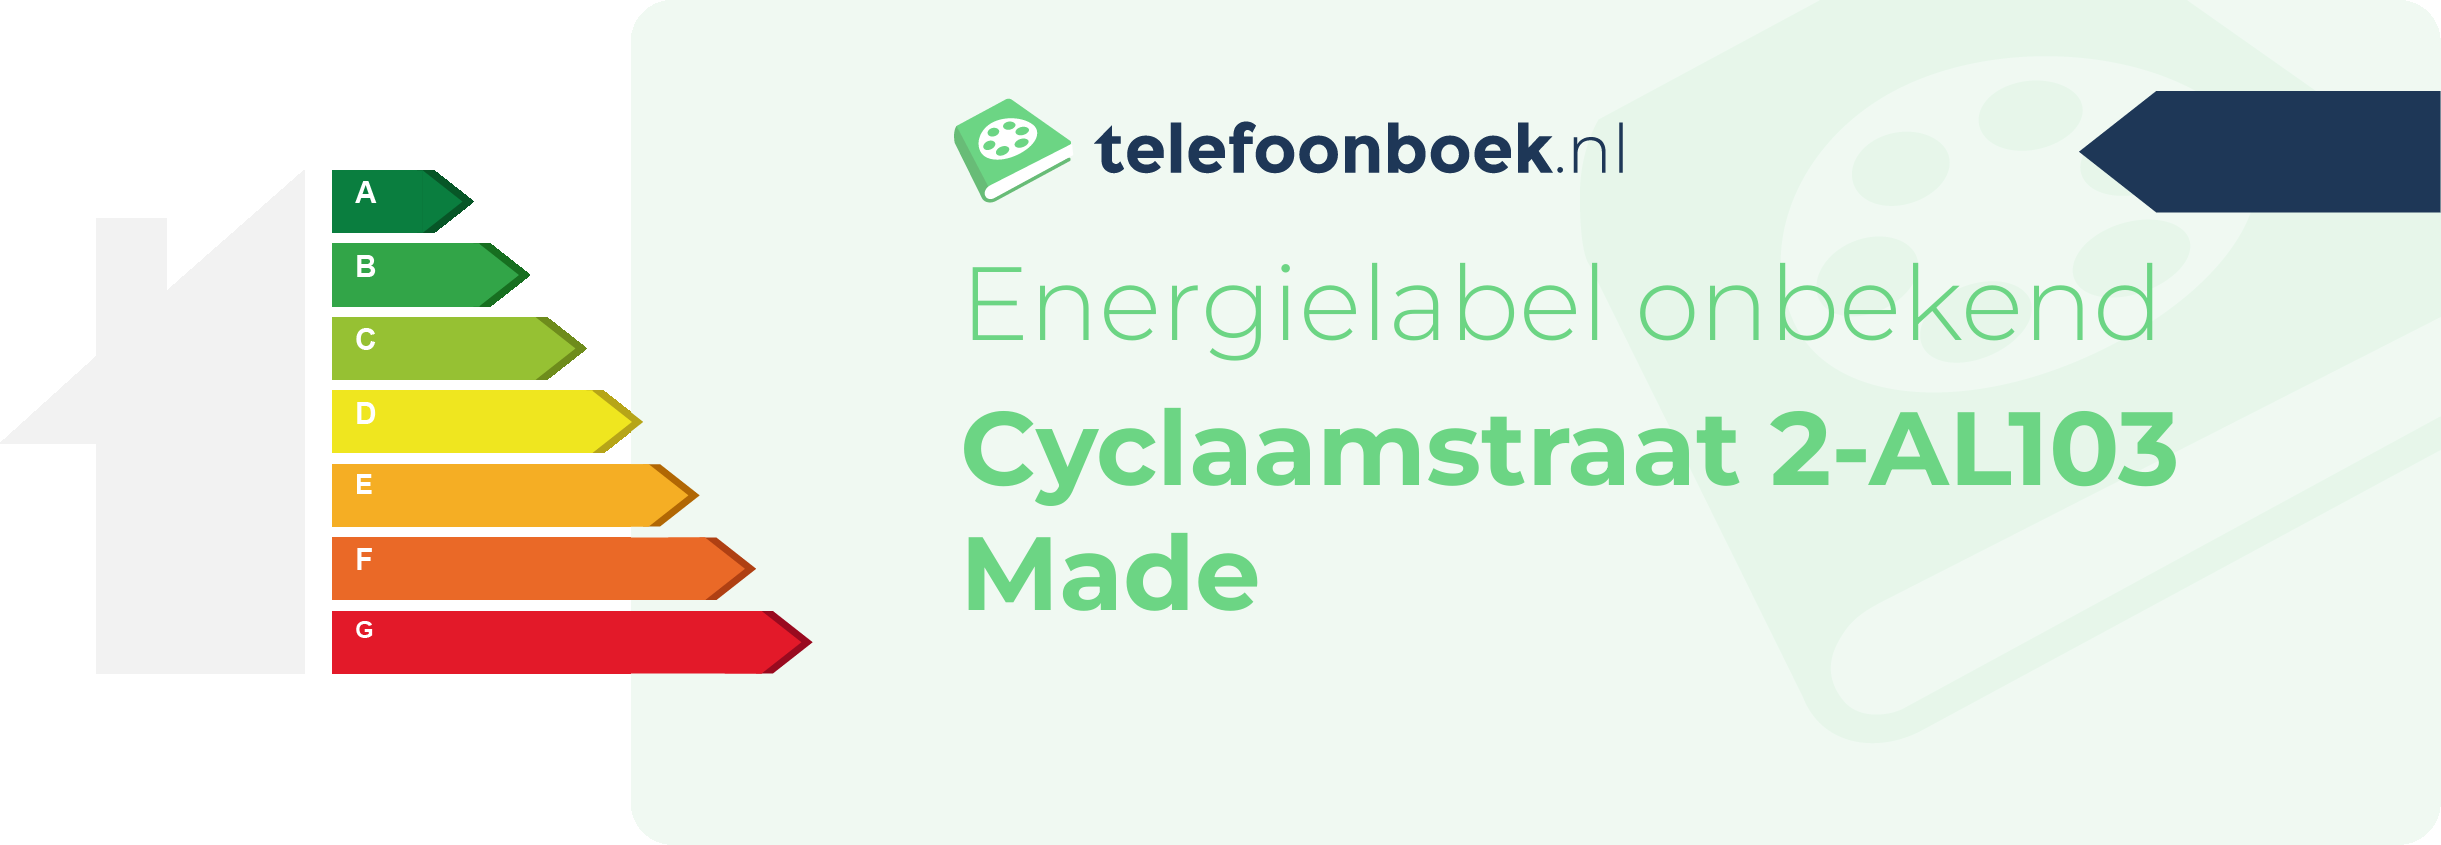 Energielabel Cyclaamstraat 2-AL103 Made